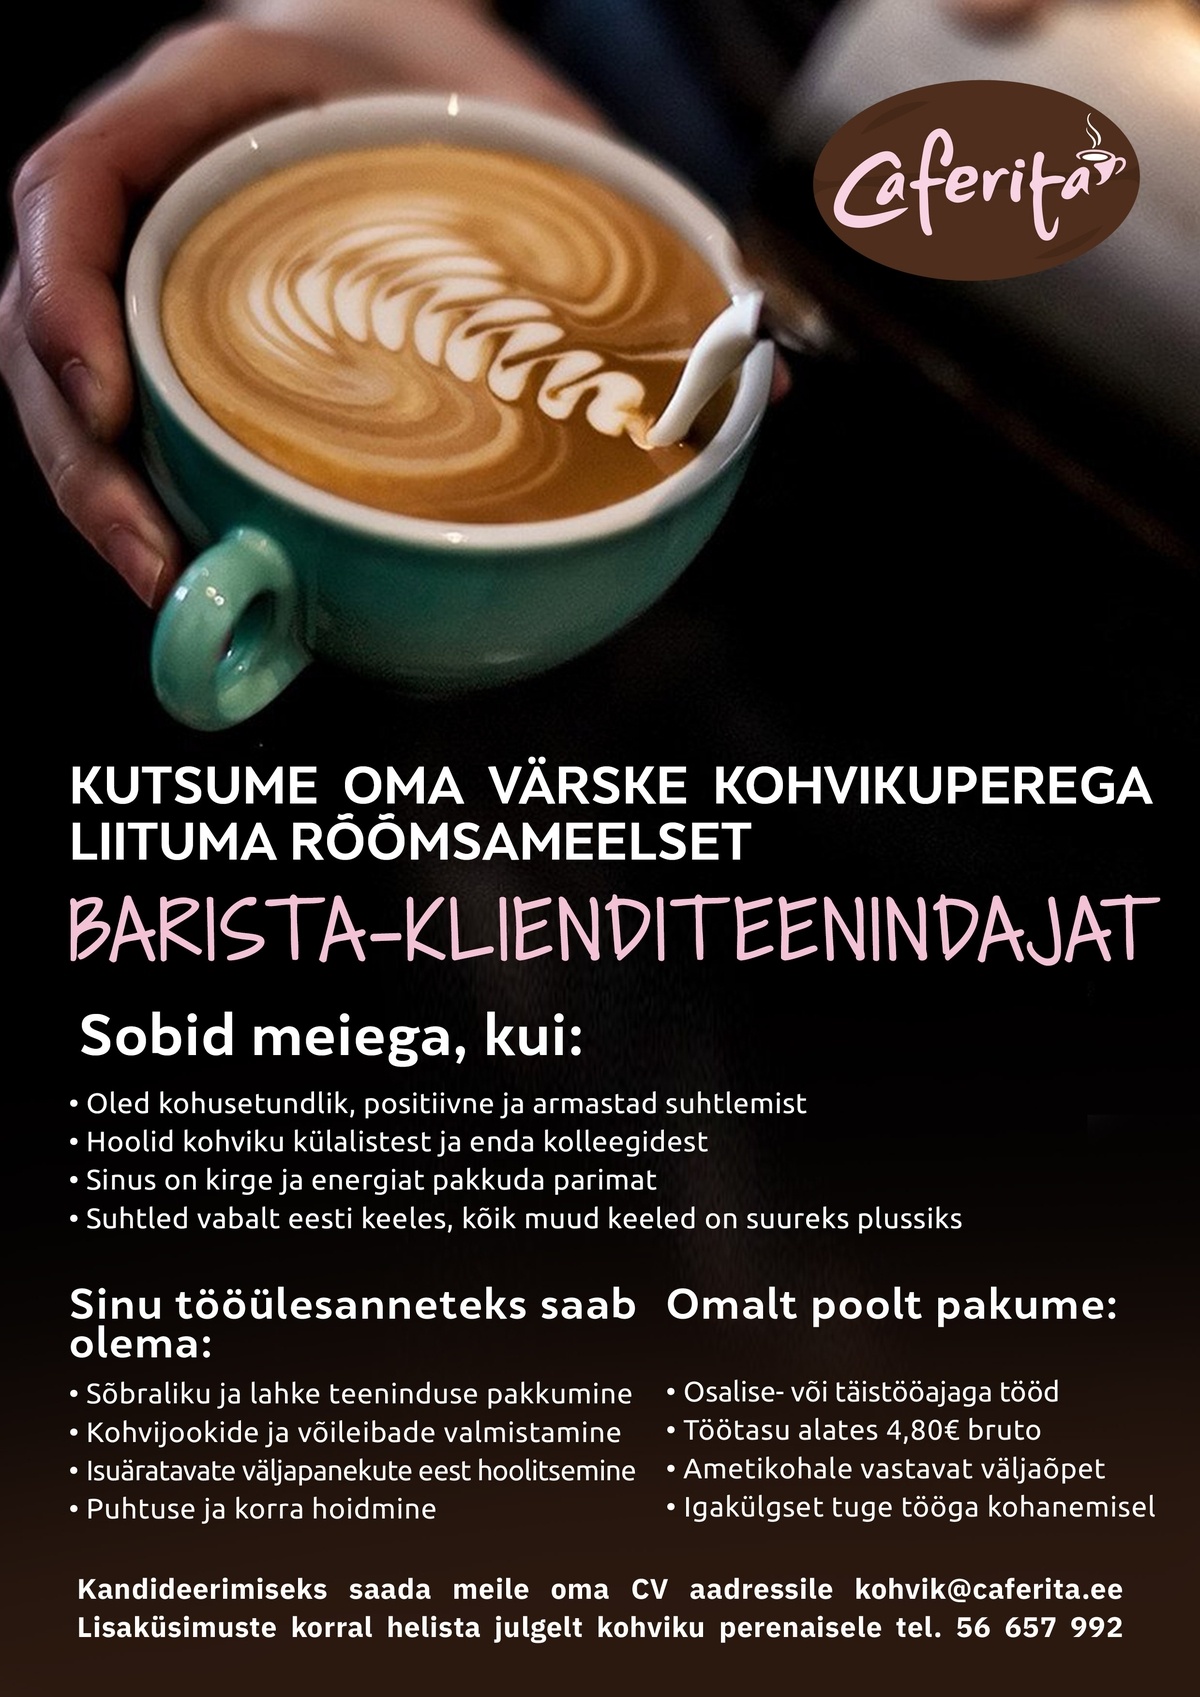 Kohviaeg OÜ Barista-klienditeenindaja